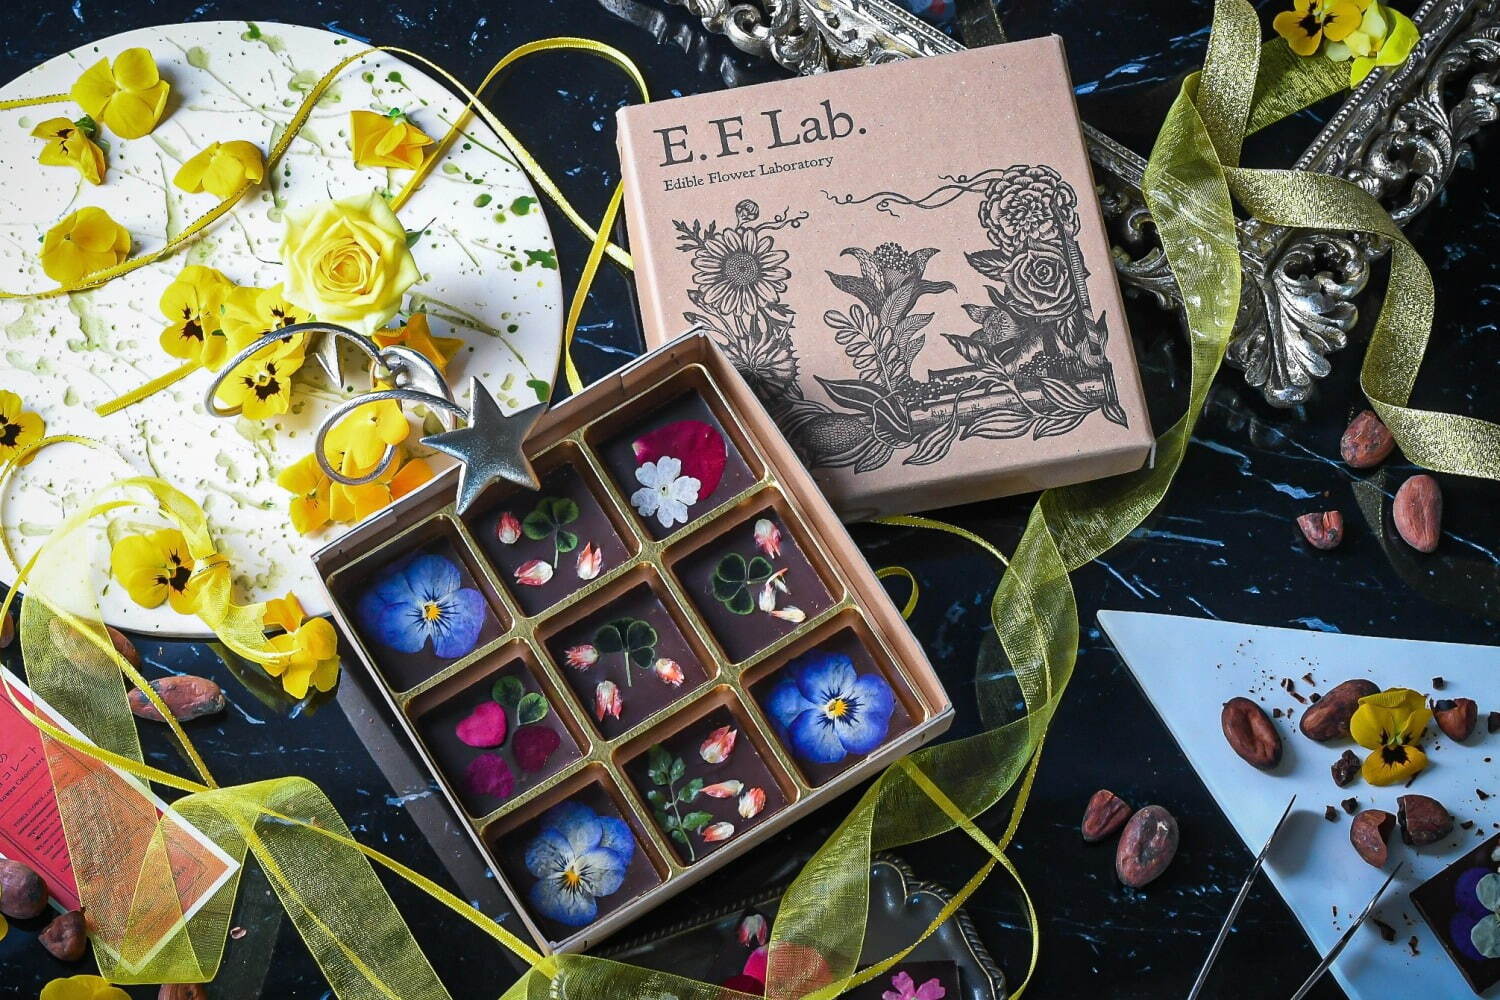 マーハ
花のチョコレート(9種計9個入) 3,537円